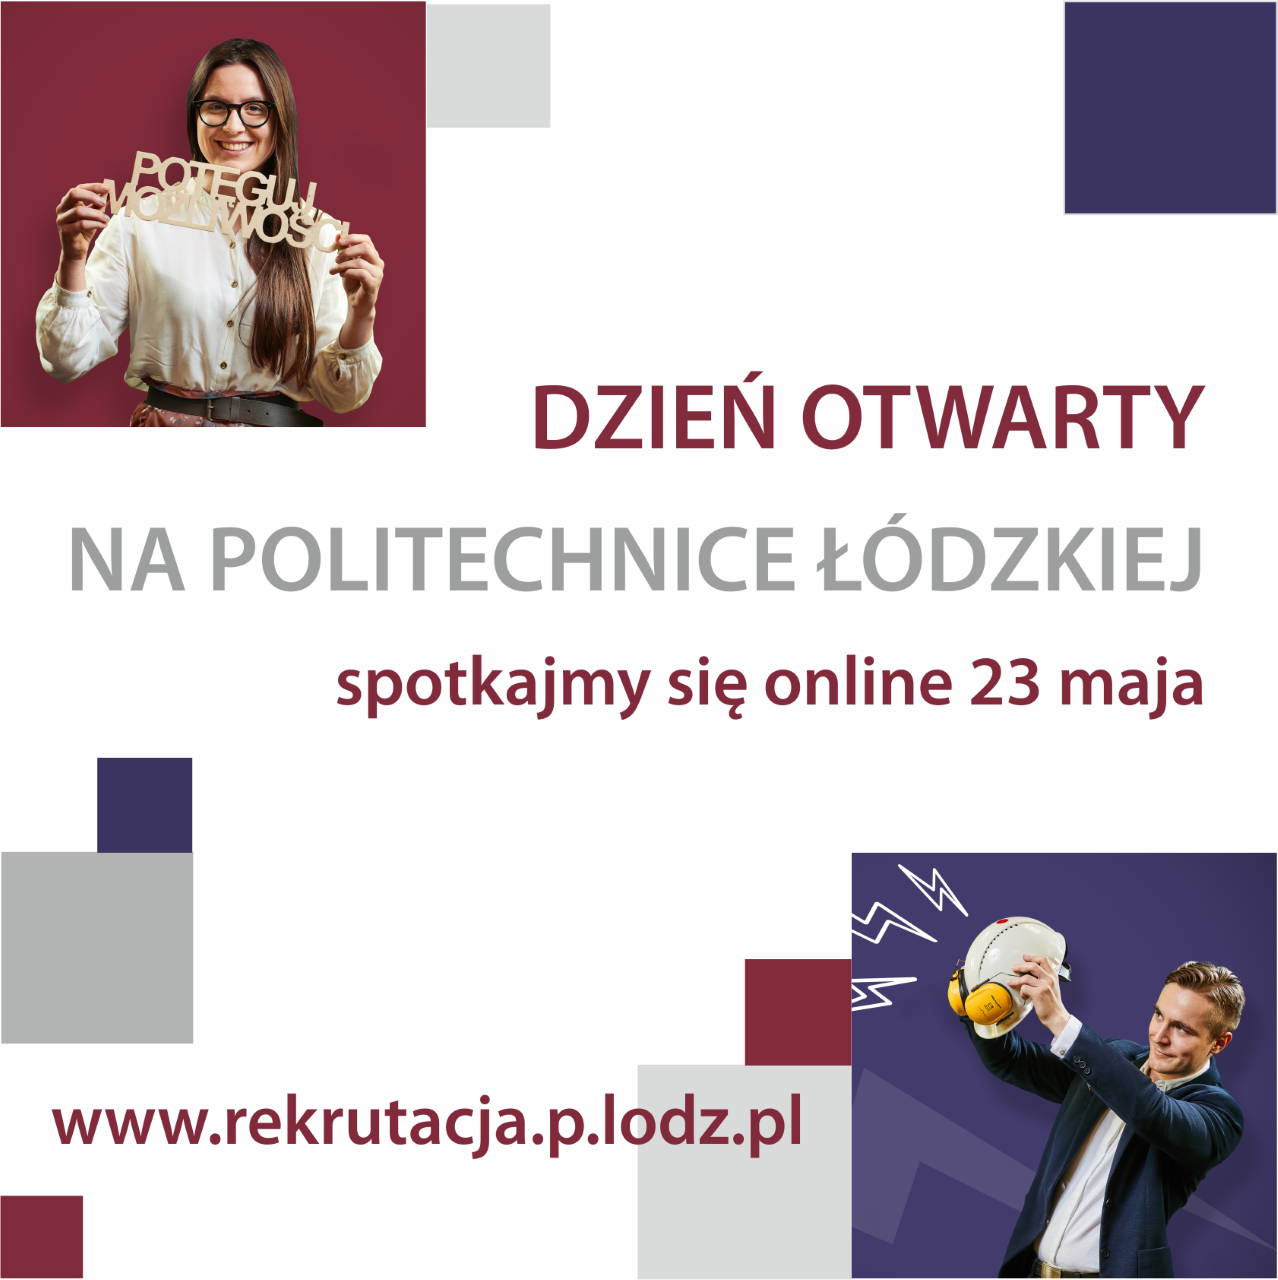 Wirtualny dzień otwarty Politechniki Łódzkiej